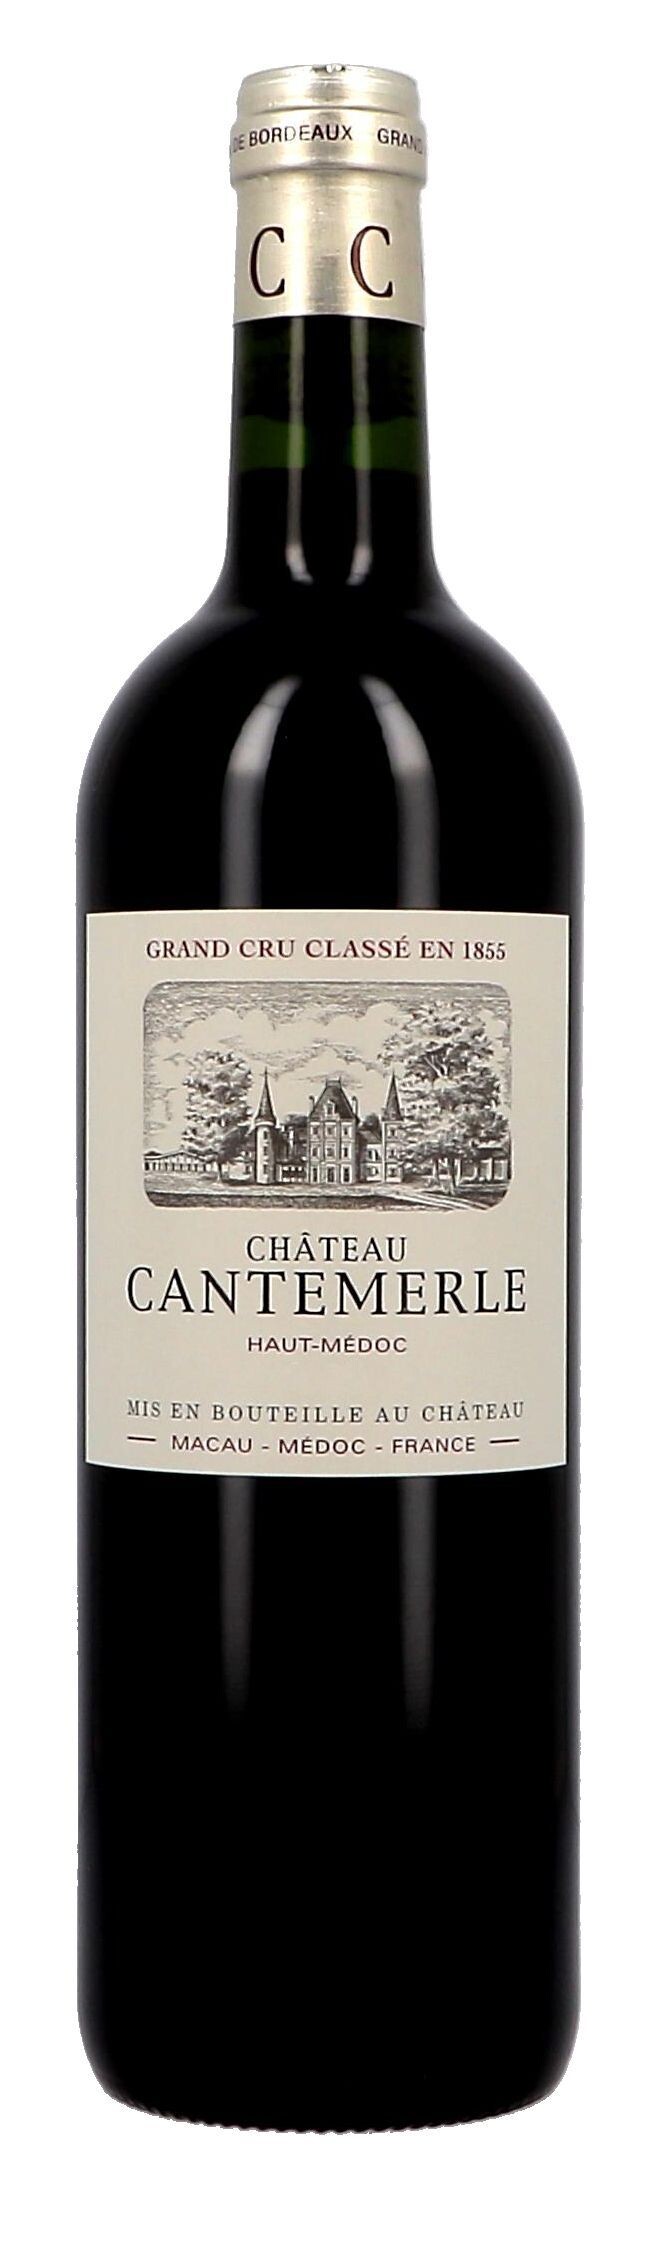 Chateau Cantemerle 75cl 2014 Haut-Medoc Grand Cru Classé (Wijnen)